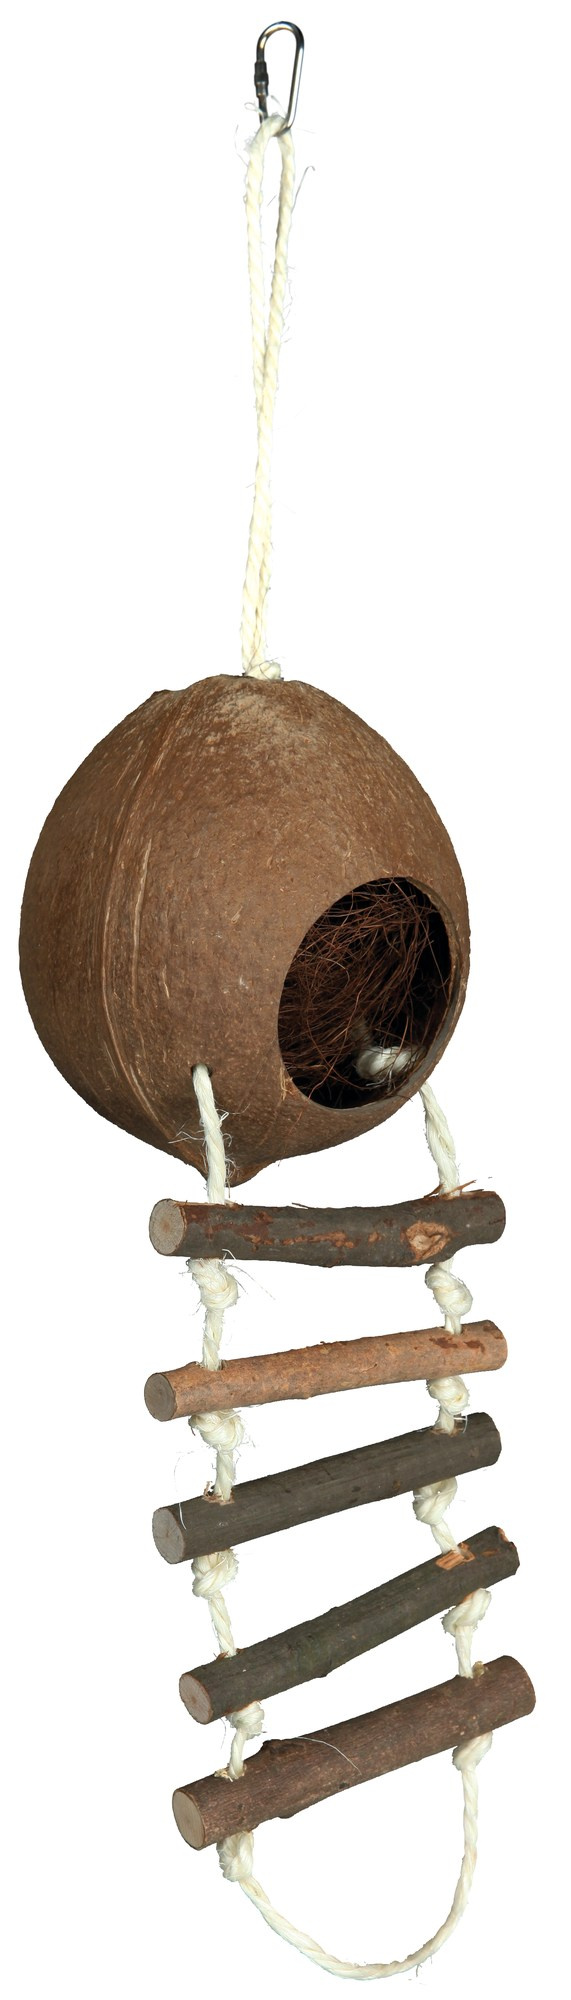 Casuta Natural Din Cocos 13×56 cm 62102 petmart